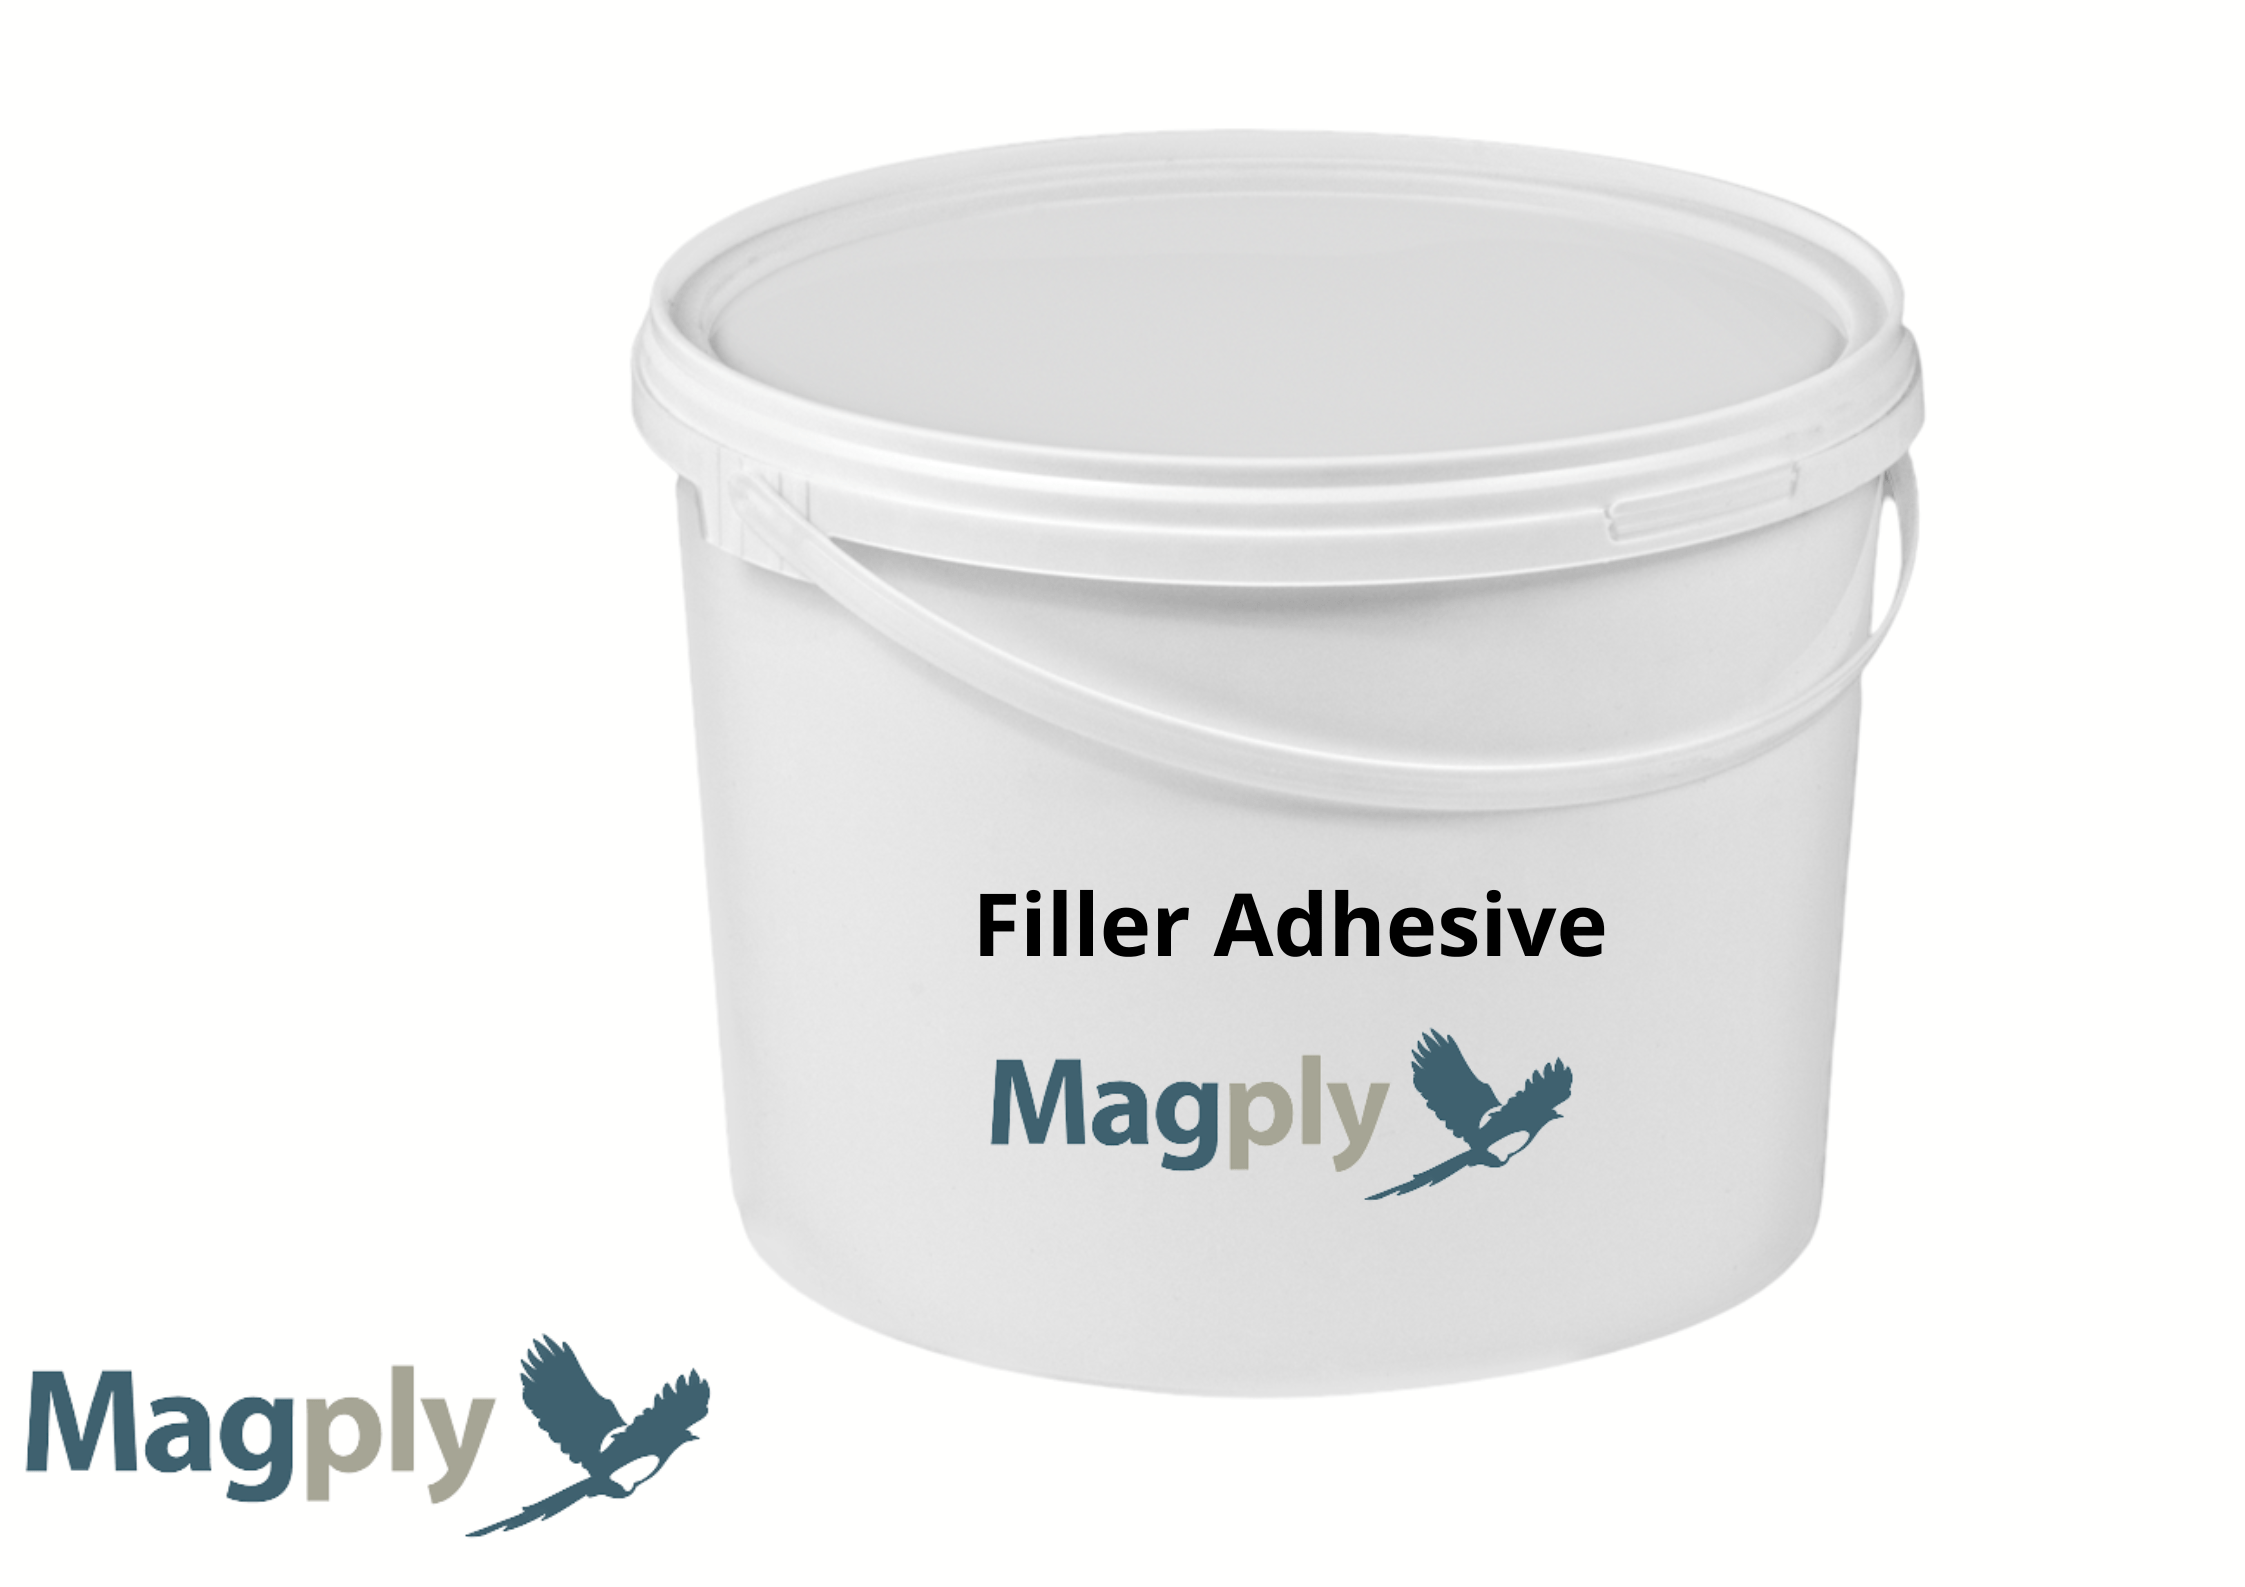 Magply Magply Ready Mixed Filler Adhesive Magply Ready Mixed Filler Adhesive | insulationuk.co.uk